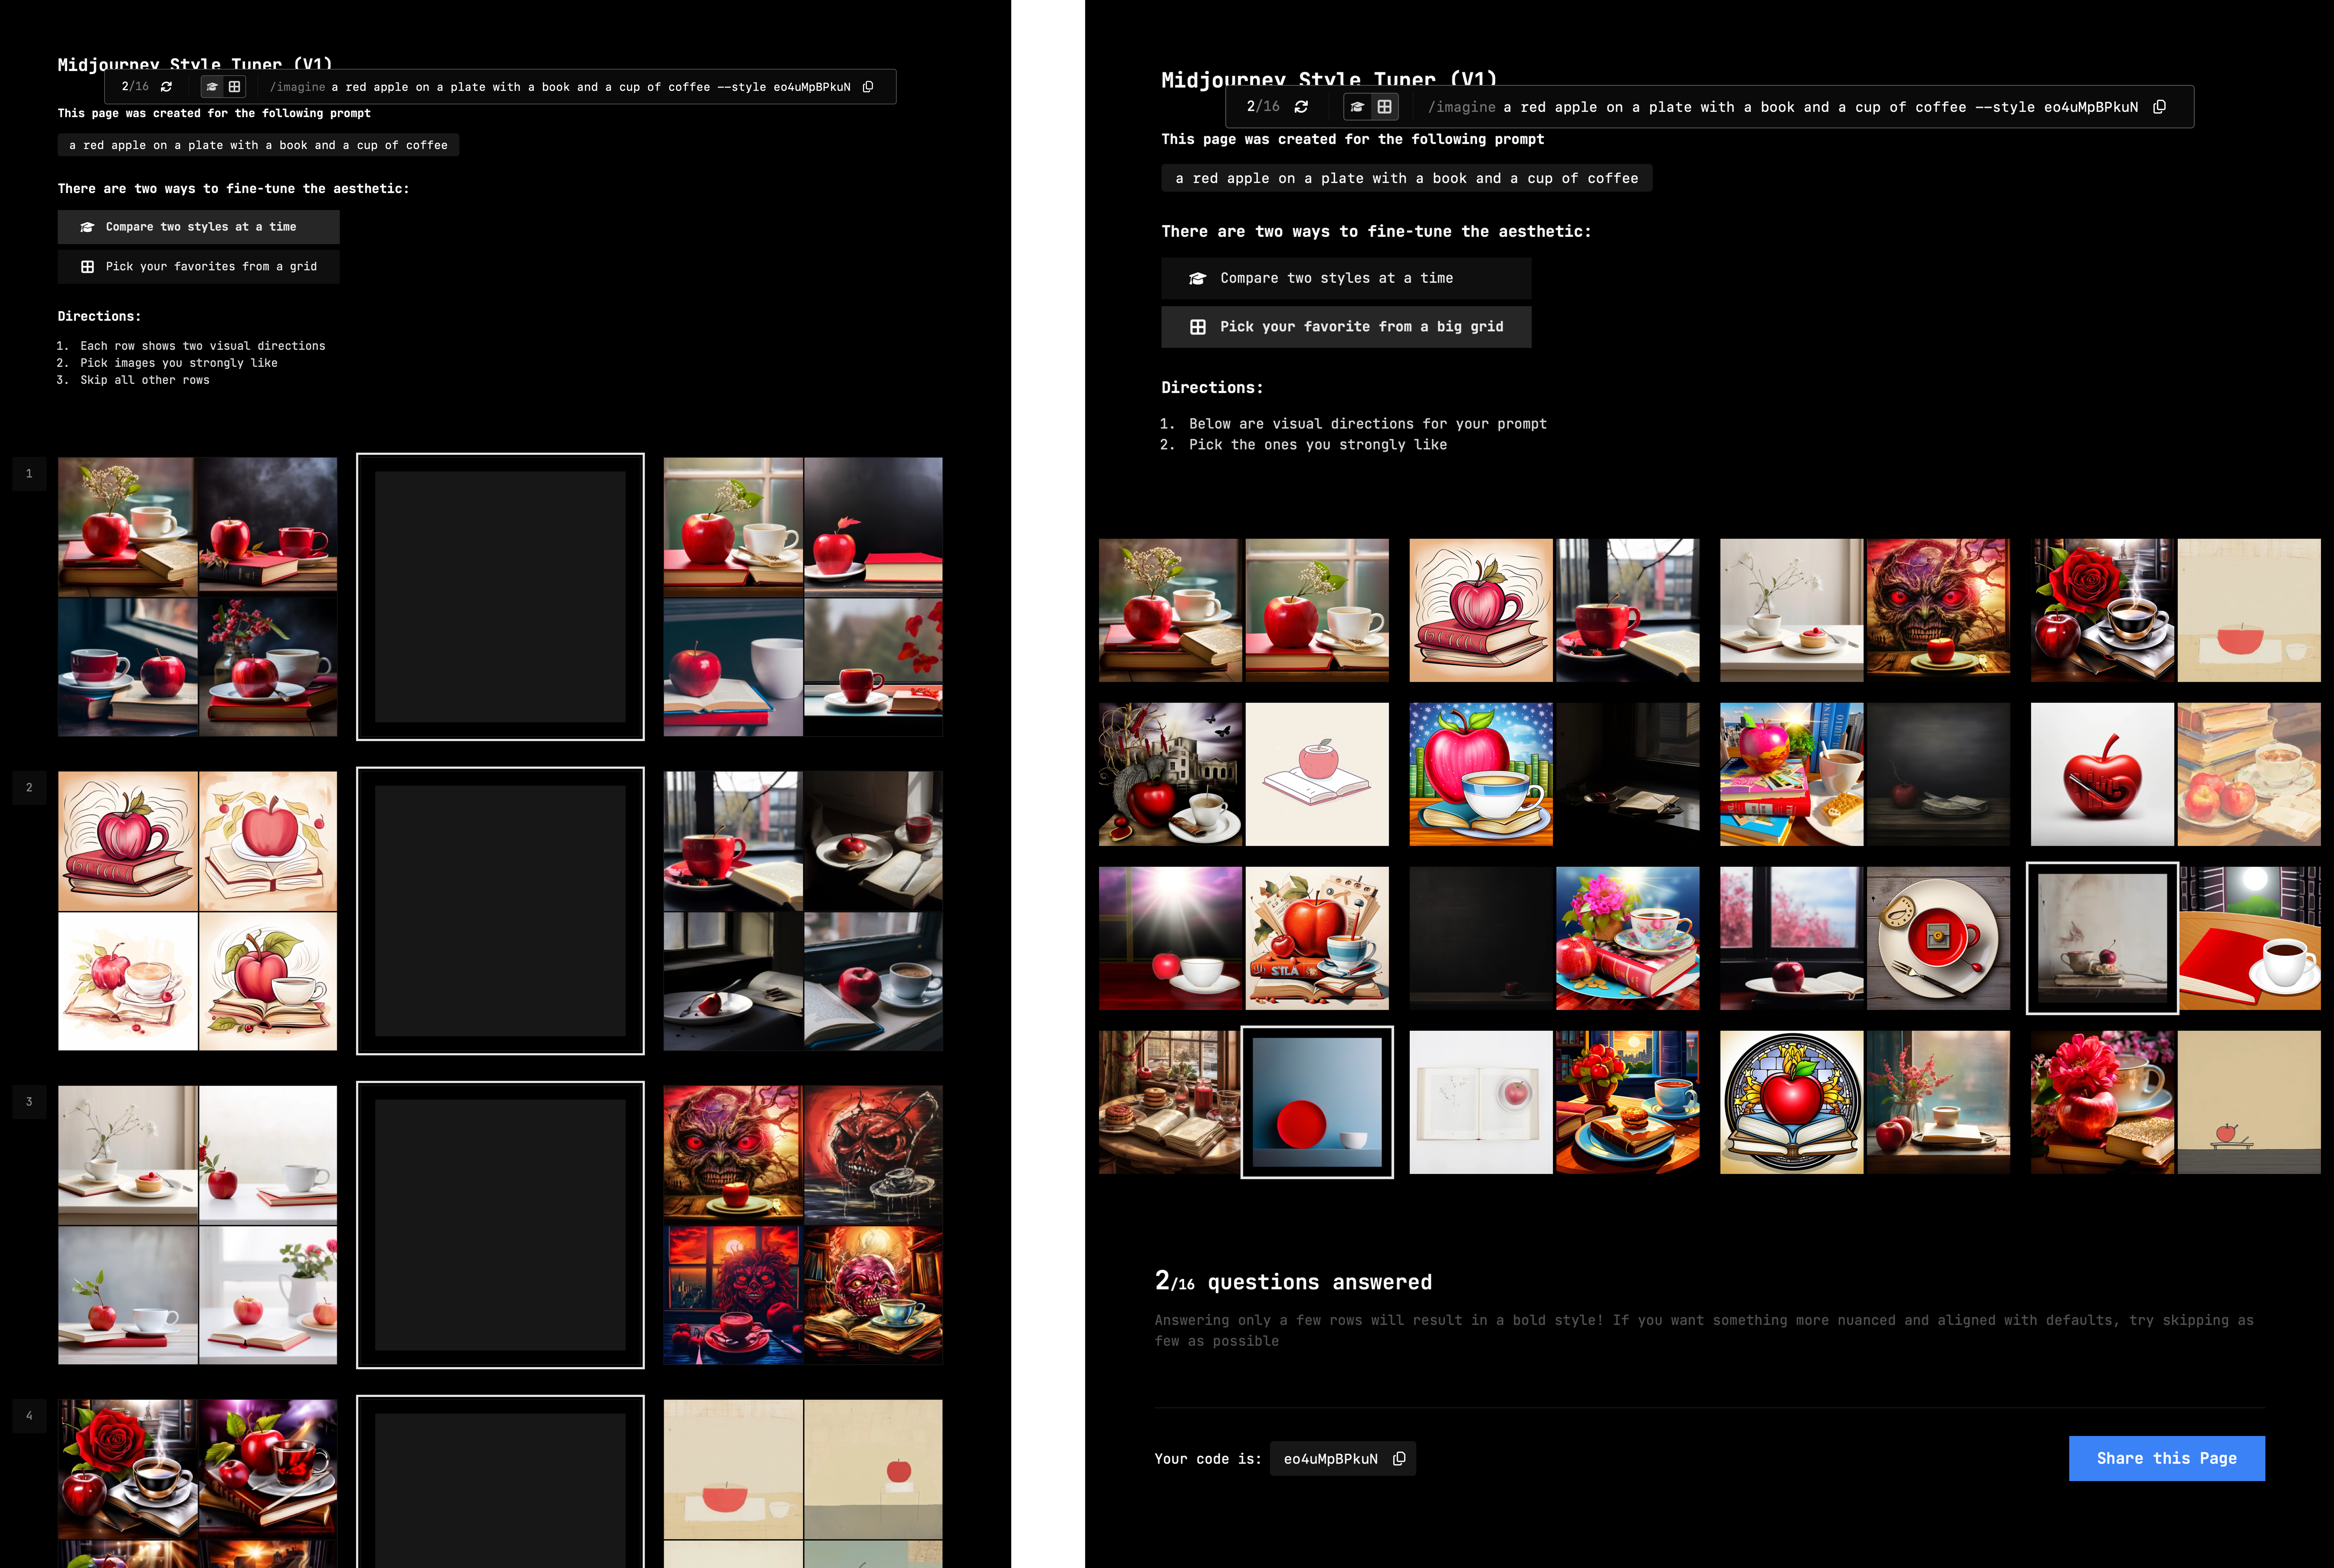 zwei screenshots aus dem interface, links mit der Stilgegenüberstellung, rechts mit den Bildern im Grid